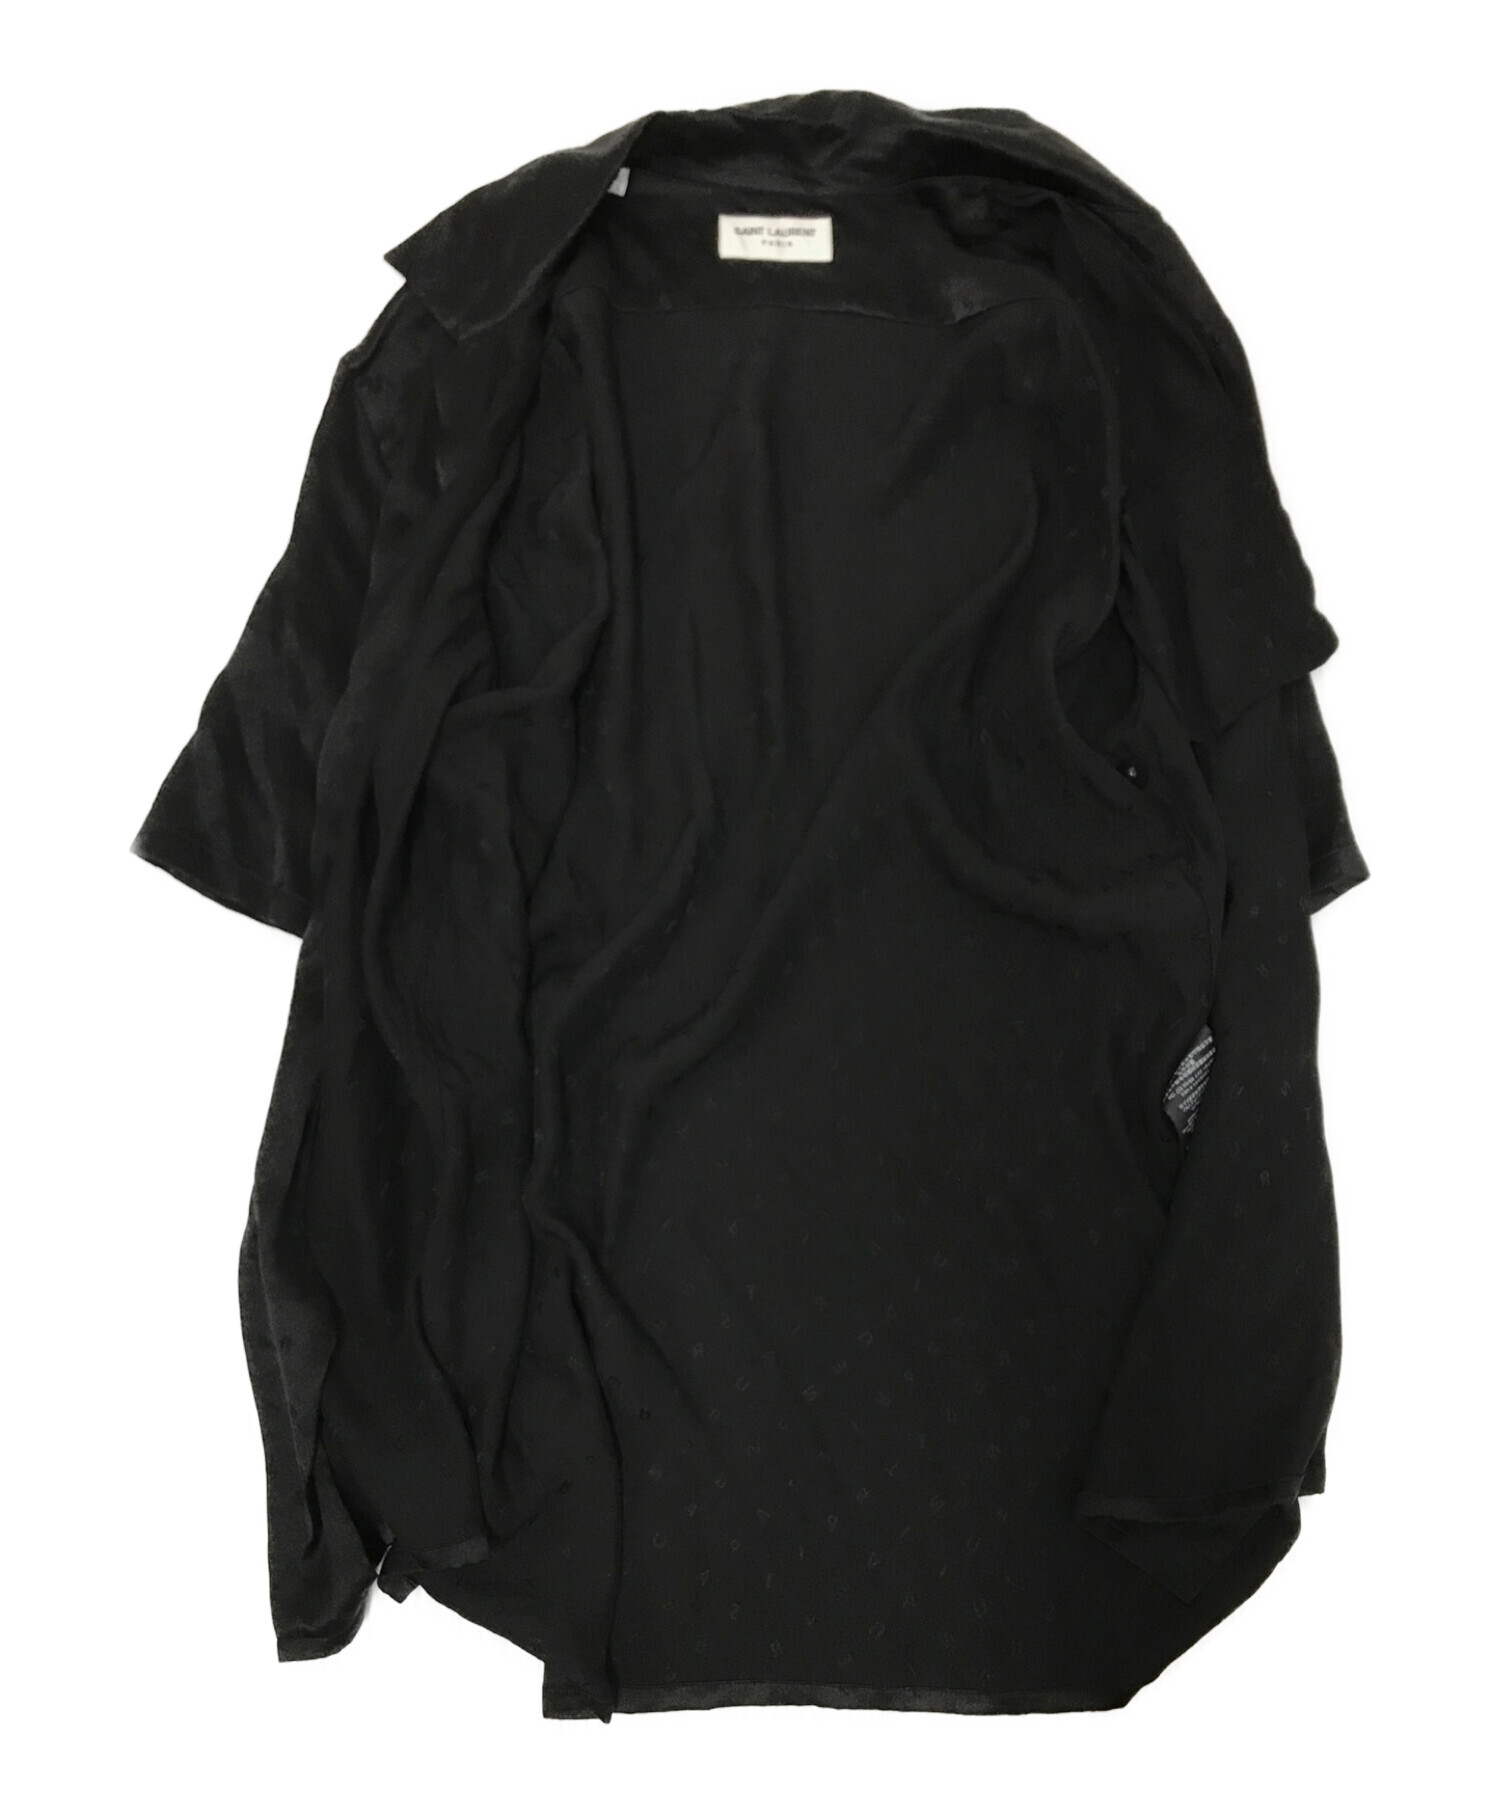 Saint Laurent Paris (サンローランパリ) アルファベットデザインシルク半袖シャツ ブラック サイズ:39